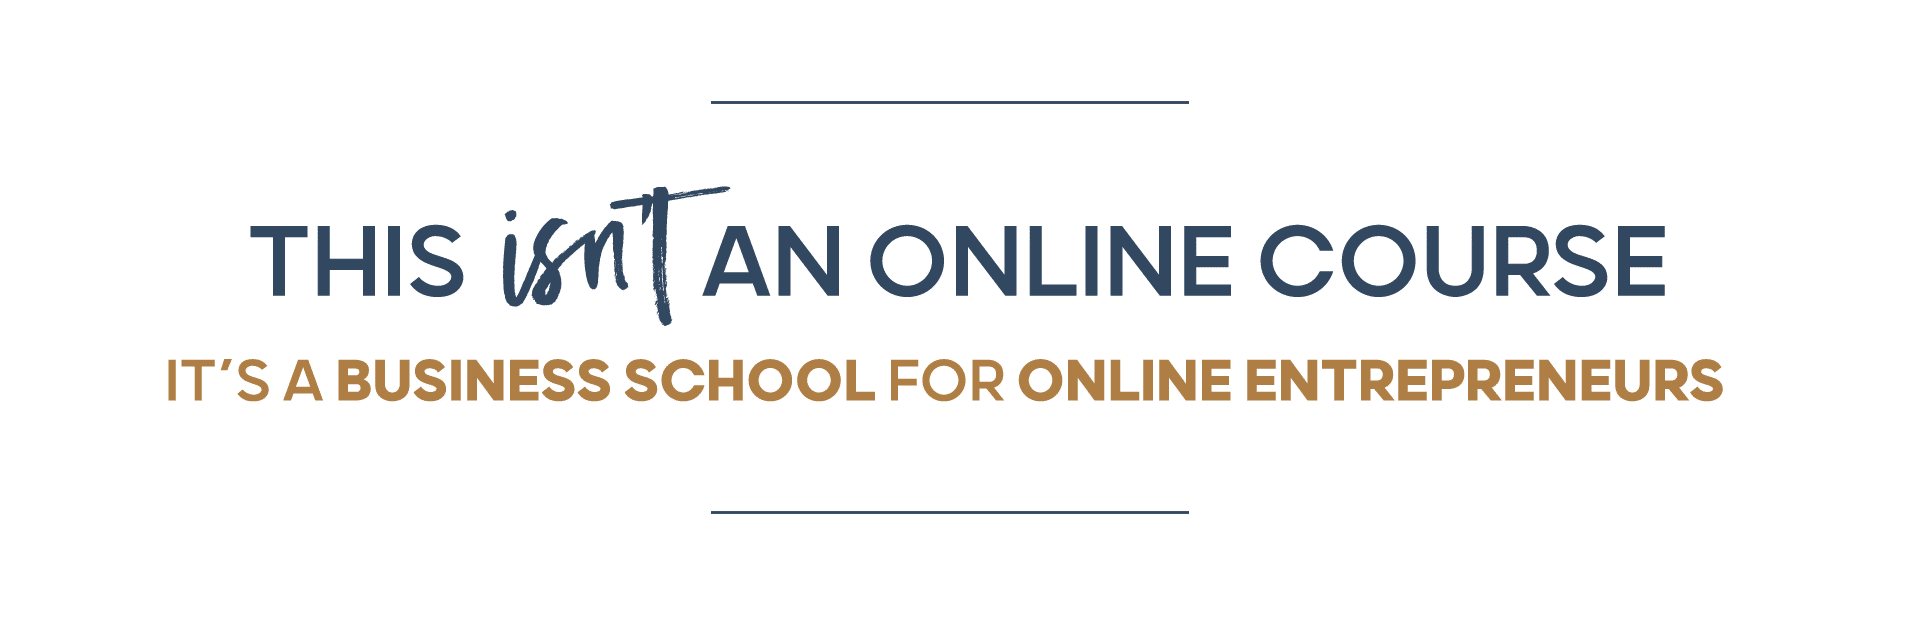 Online business school